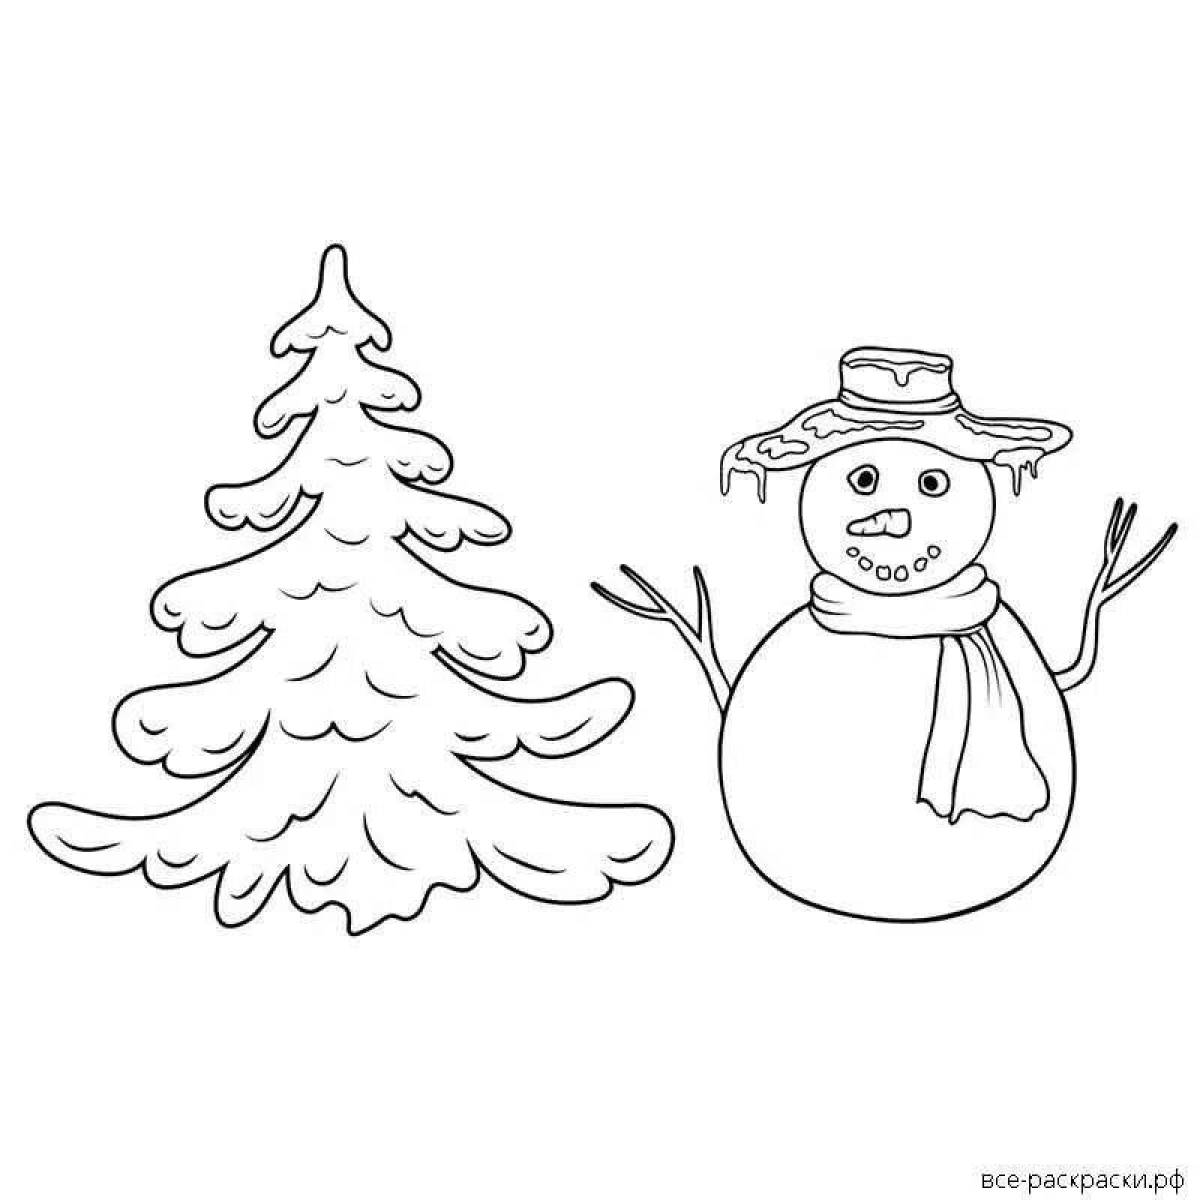 Herringbone and snowman #6